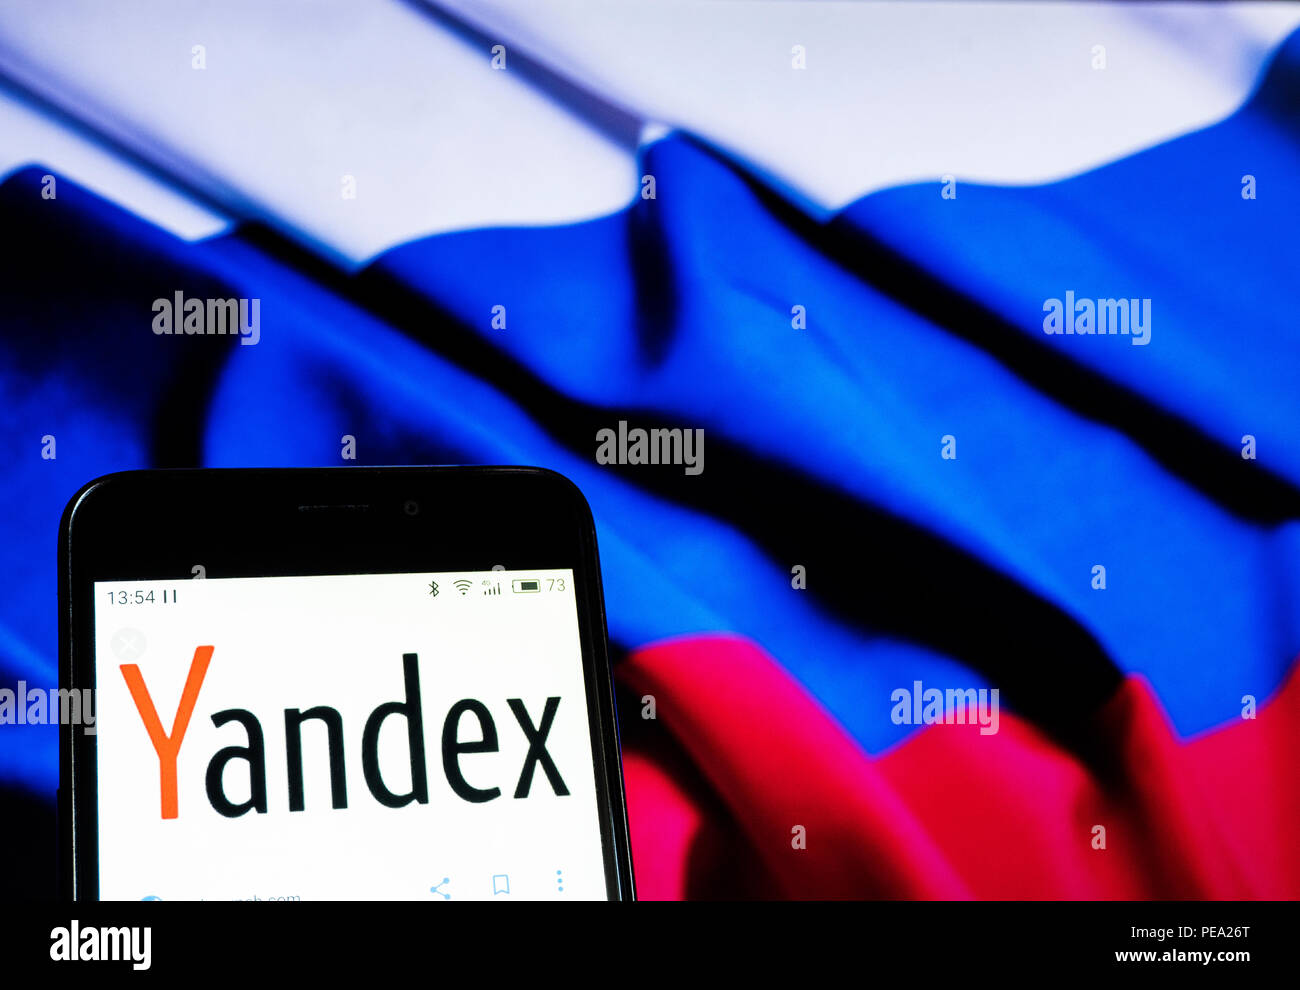 Logo Yandex vu affichée sur téléphone intelligent. Dans le cadre de l'introduction le 22 août de nouvelles sanctions contre la Russie dans le cas d'Skripal, actions inscrites dans la liste des entreprises a fortement baissé. Banque D'Images